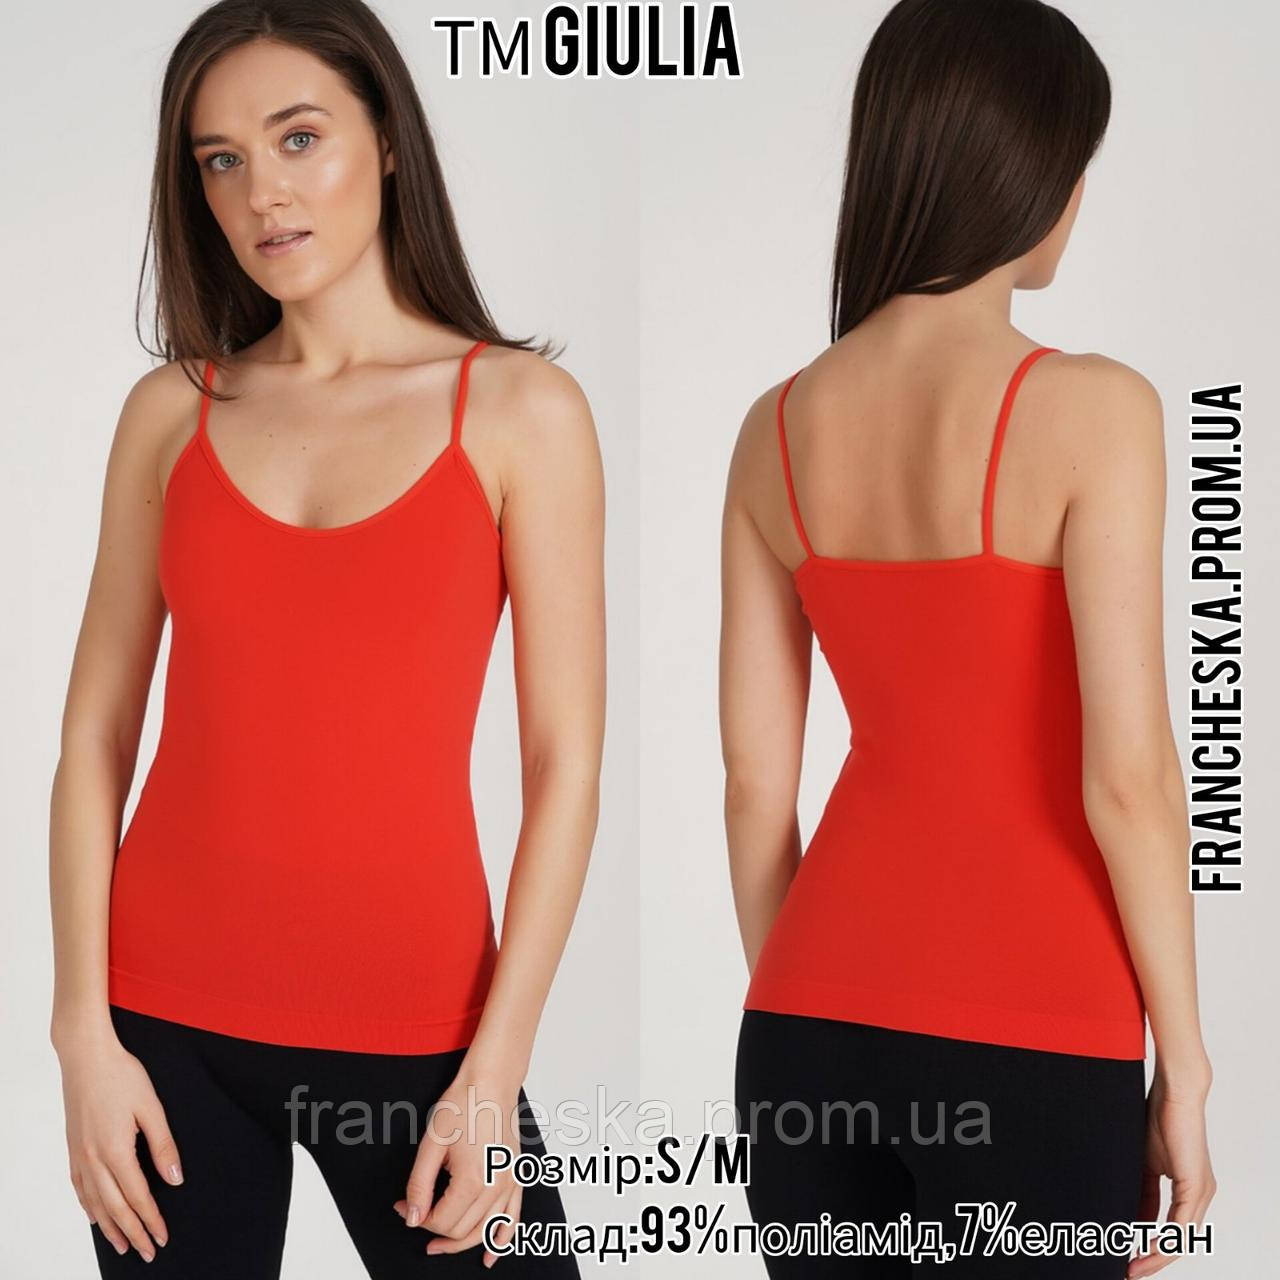 Жіноча безшовна червона майка TM "Giulia" (розмір S/M)